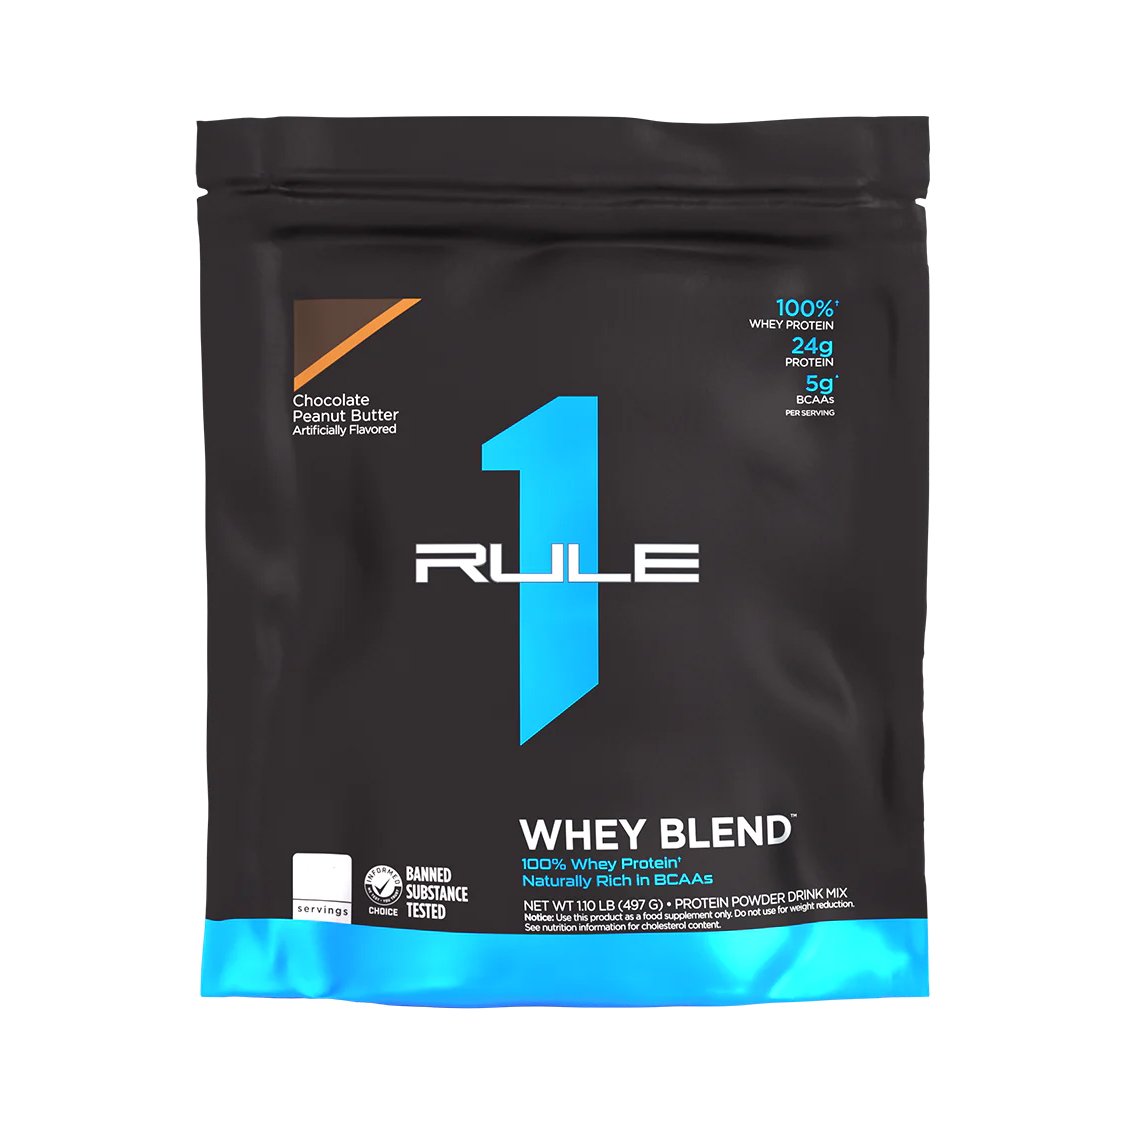 Протеин Rule 1 Whey Blend, 13 порций Шоколад-арахис (476 грамм) СРОК 05.24,  ml, Rule One Proteins. Protein. Mass Gain recovery Anti-catabolic properties 